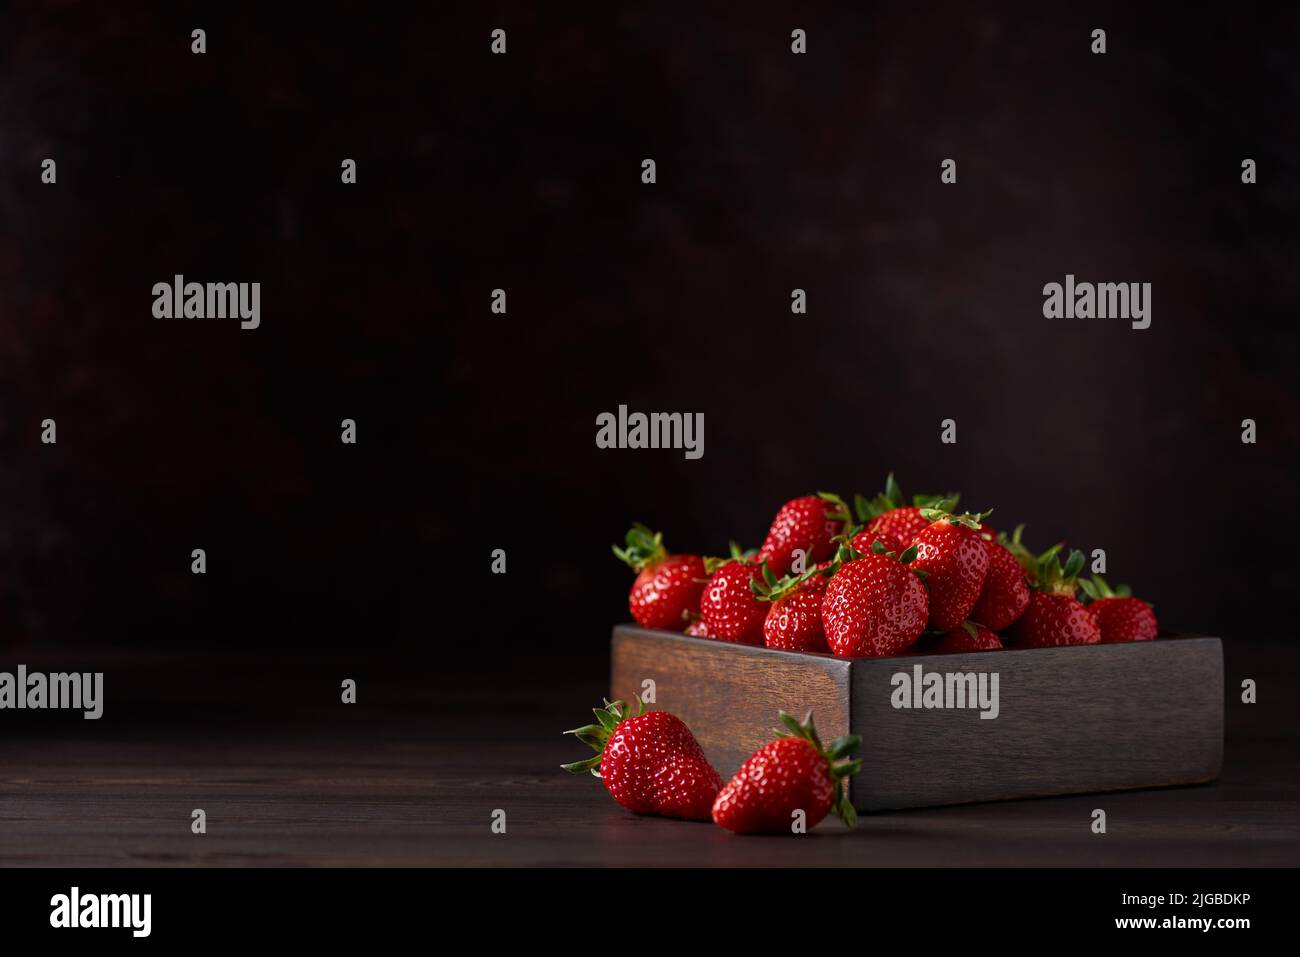 Frische rote reife Erdbeeren in einer quadratischen Holzschüssel auf einem braunen Holztisch. Es gibt zwei Erdbeeren in der Nähe. Brauner Hintergrund, horizontal. Nahaufnahme Stockfoto